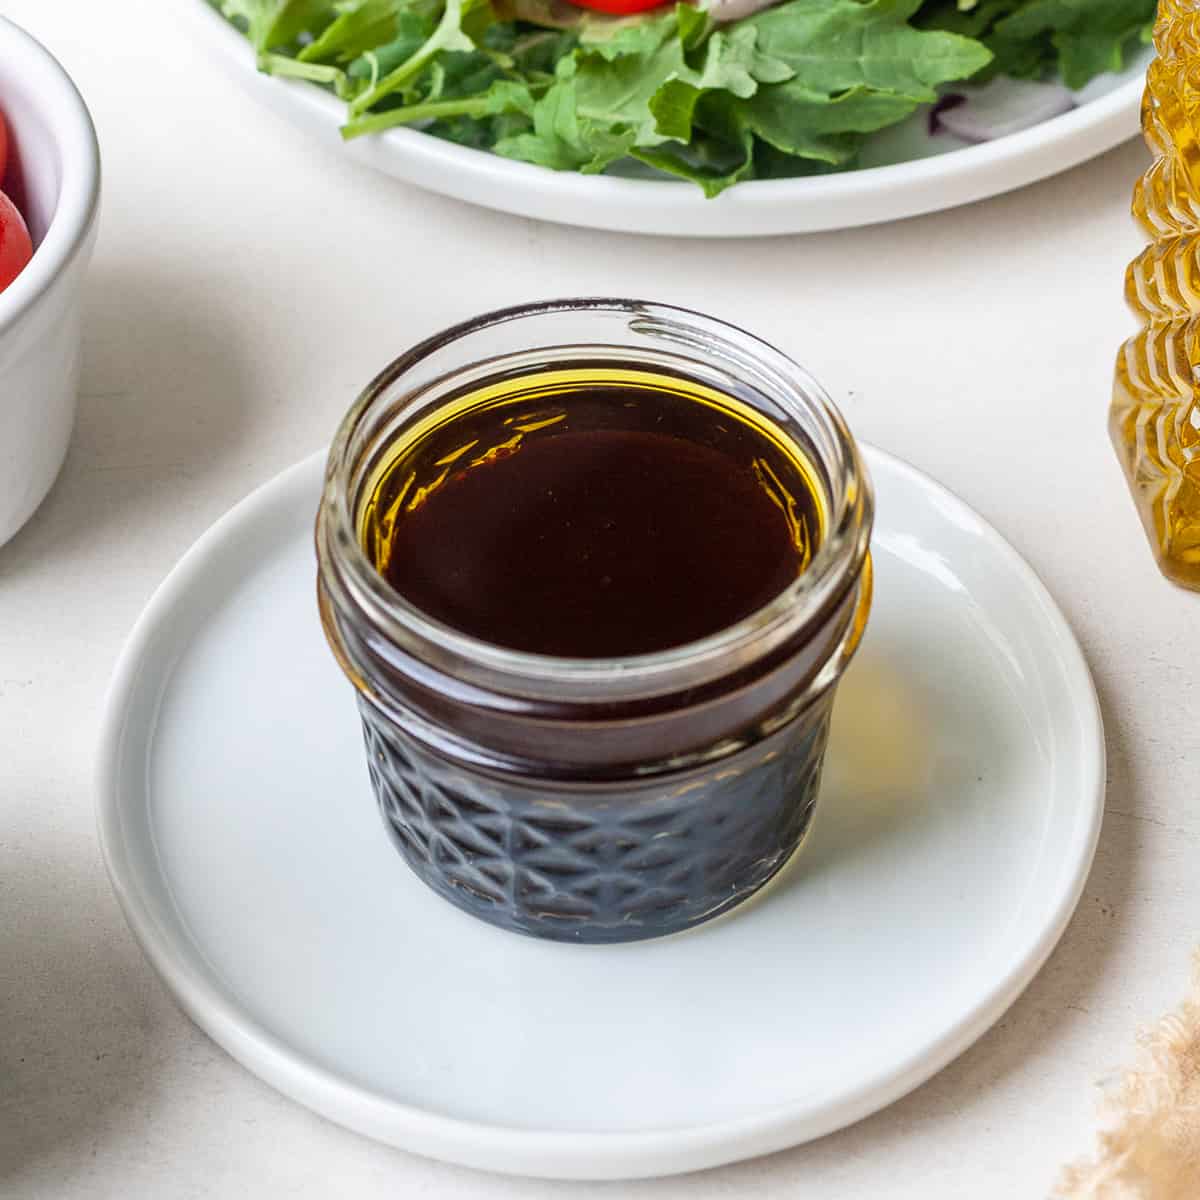 a glass jar of Maple Balsamic Vinaigrette Dressing